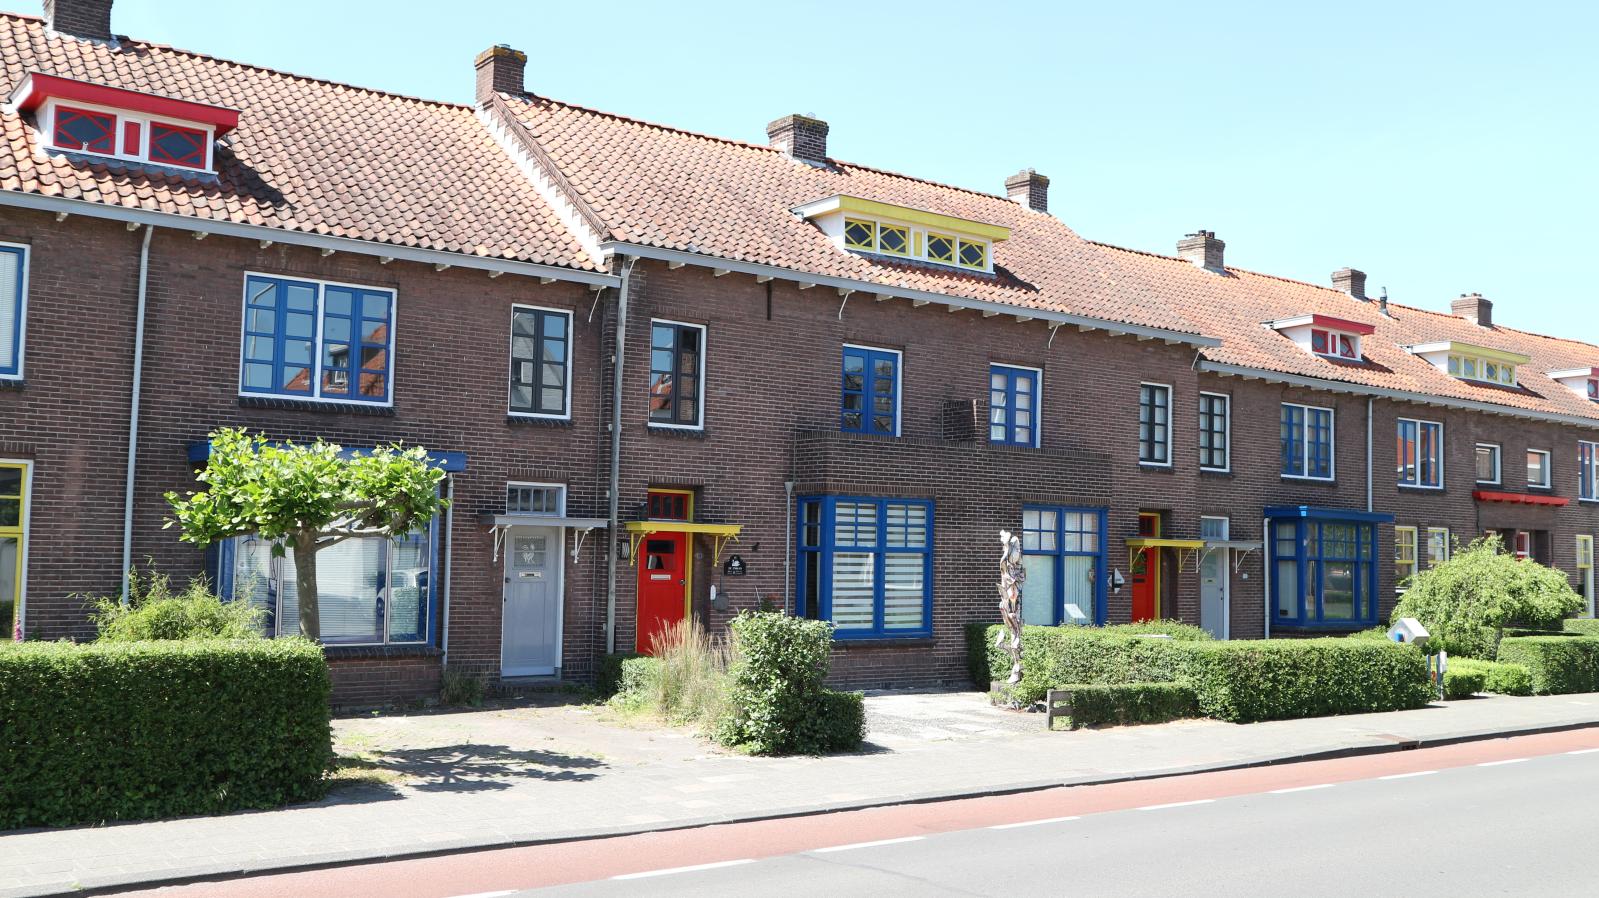 La maison Van Doesburg, située dans le centre-ville de Drachten, fait partie d’un ensemble immobilier décoré par l’artiste. © Museum Dr8888